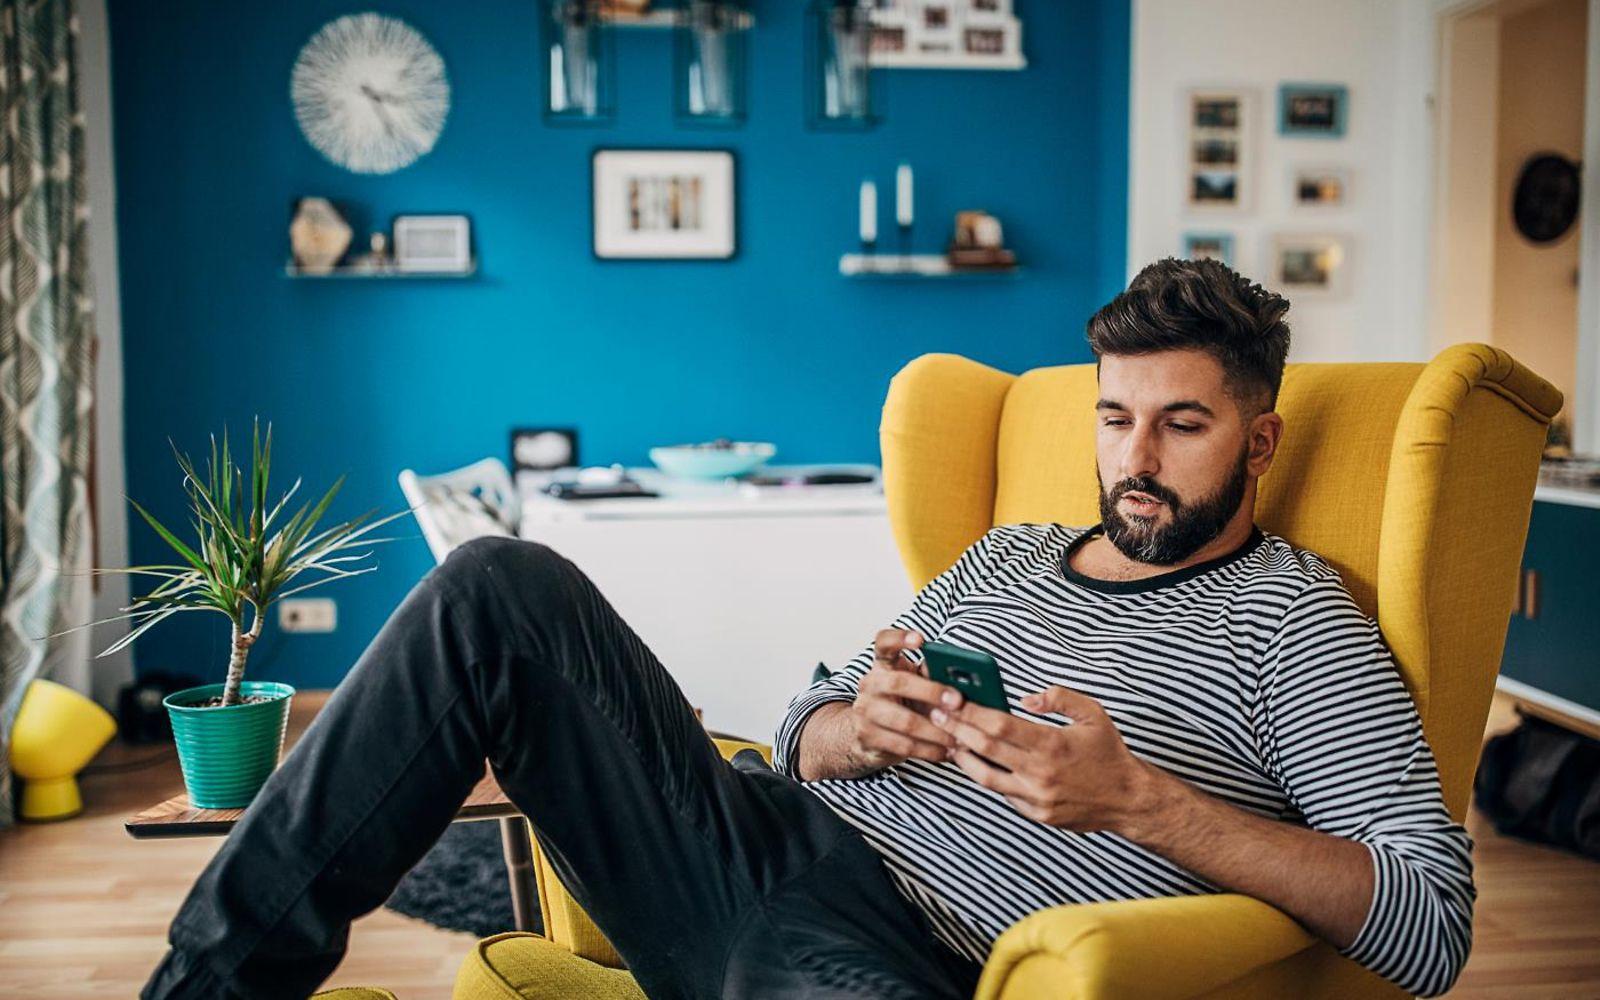 DAK App: Mann sitzt auf Sessel und nutzt entspannt sein Smartphone